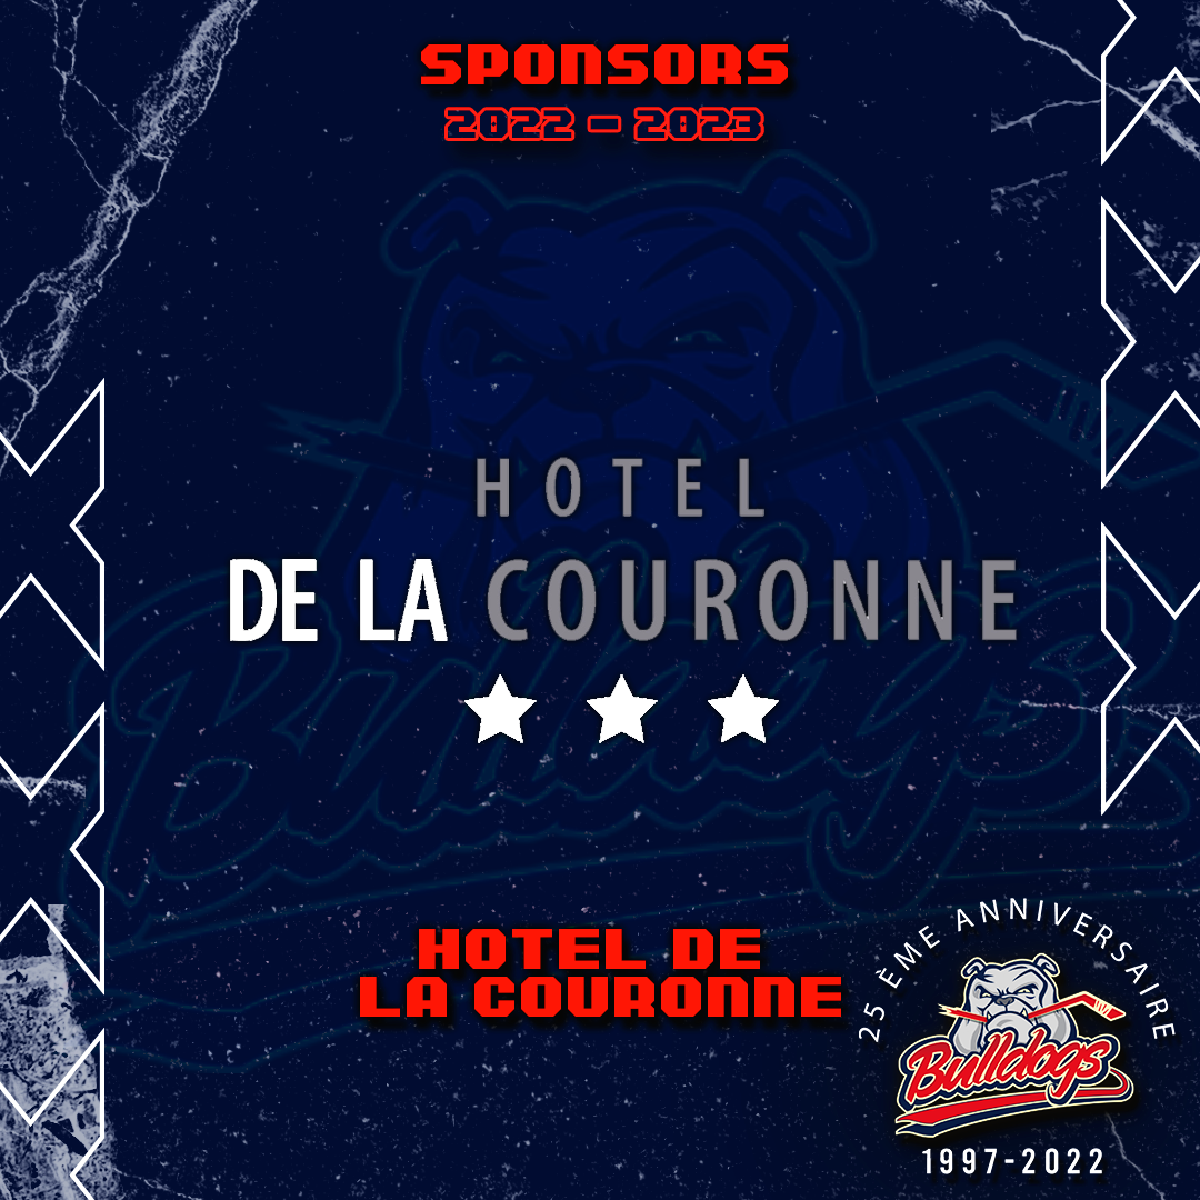 NEWS - HOTEL DE LA COURONNE - SPONSOR DES BULLDOGS DE LIEGE POUR LA SAISON 2022-2023